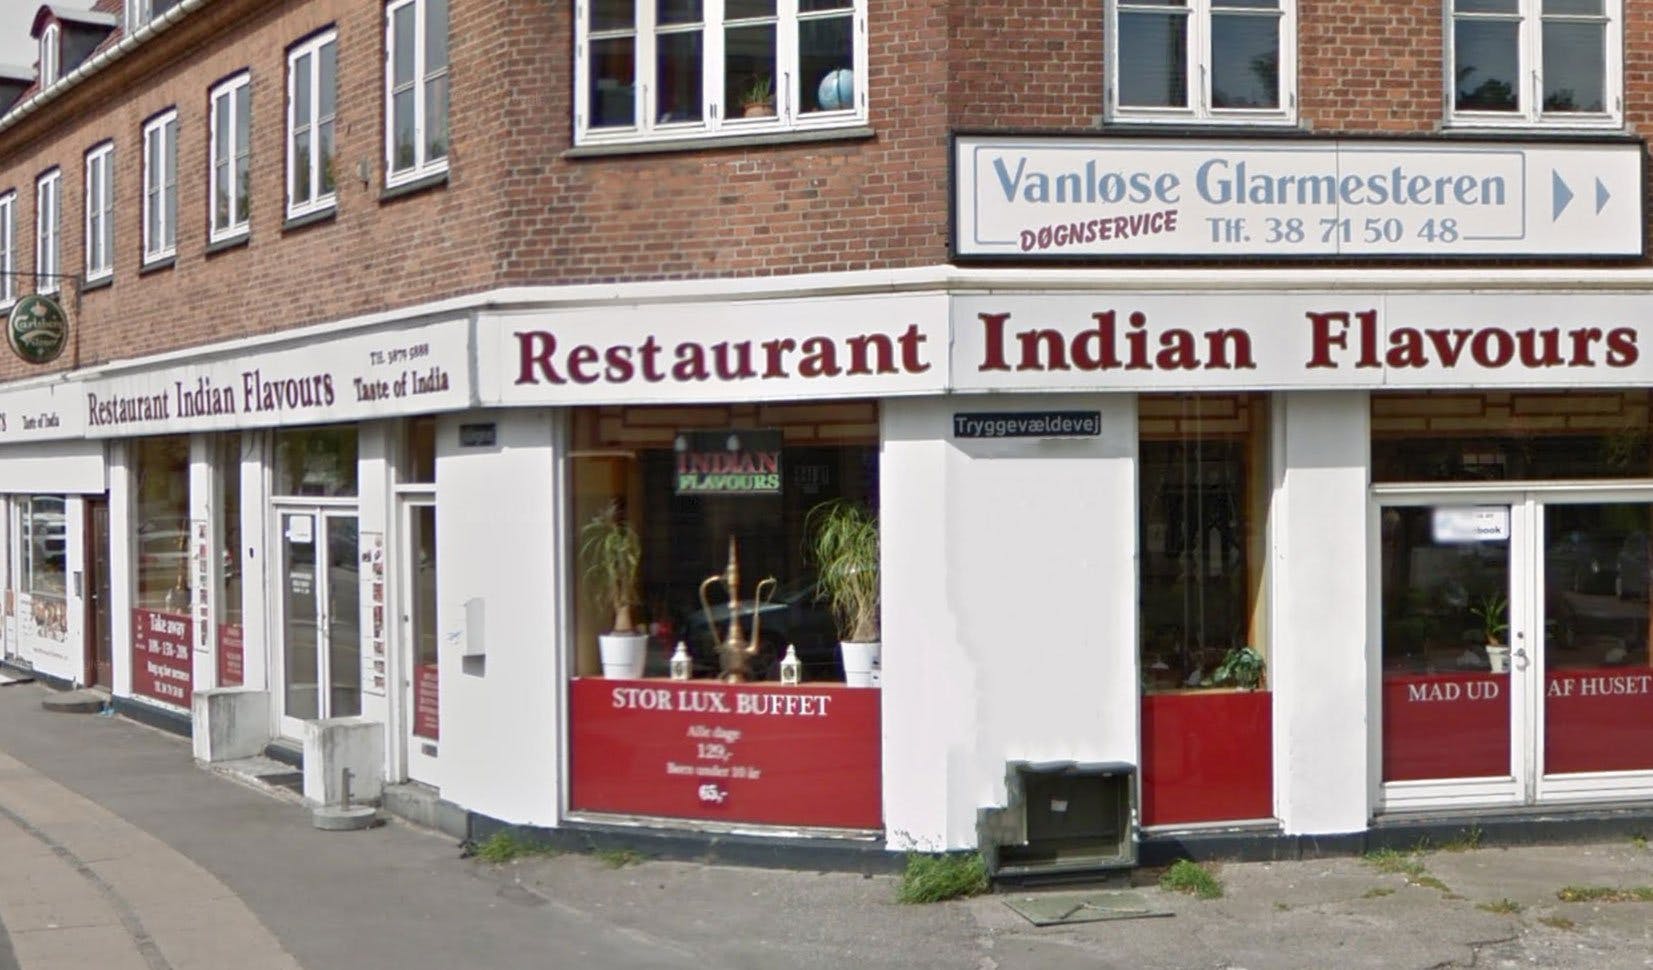 Utallige Grunde ligegyldighed Indisk restaurant til salg på 500m2 i Vanløse - Saxis Virksomhedsbørs